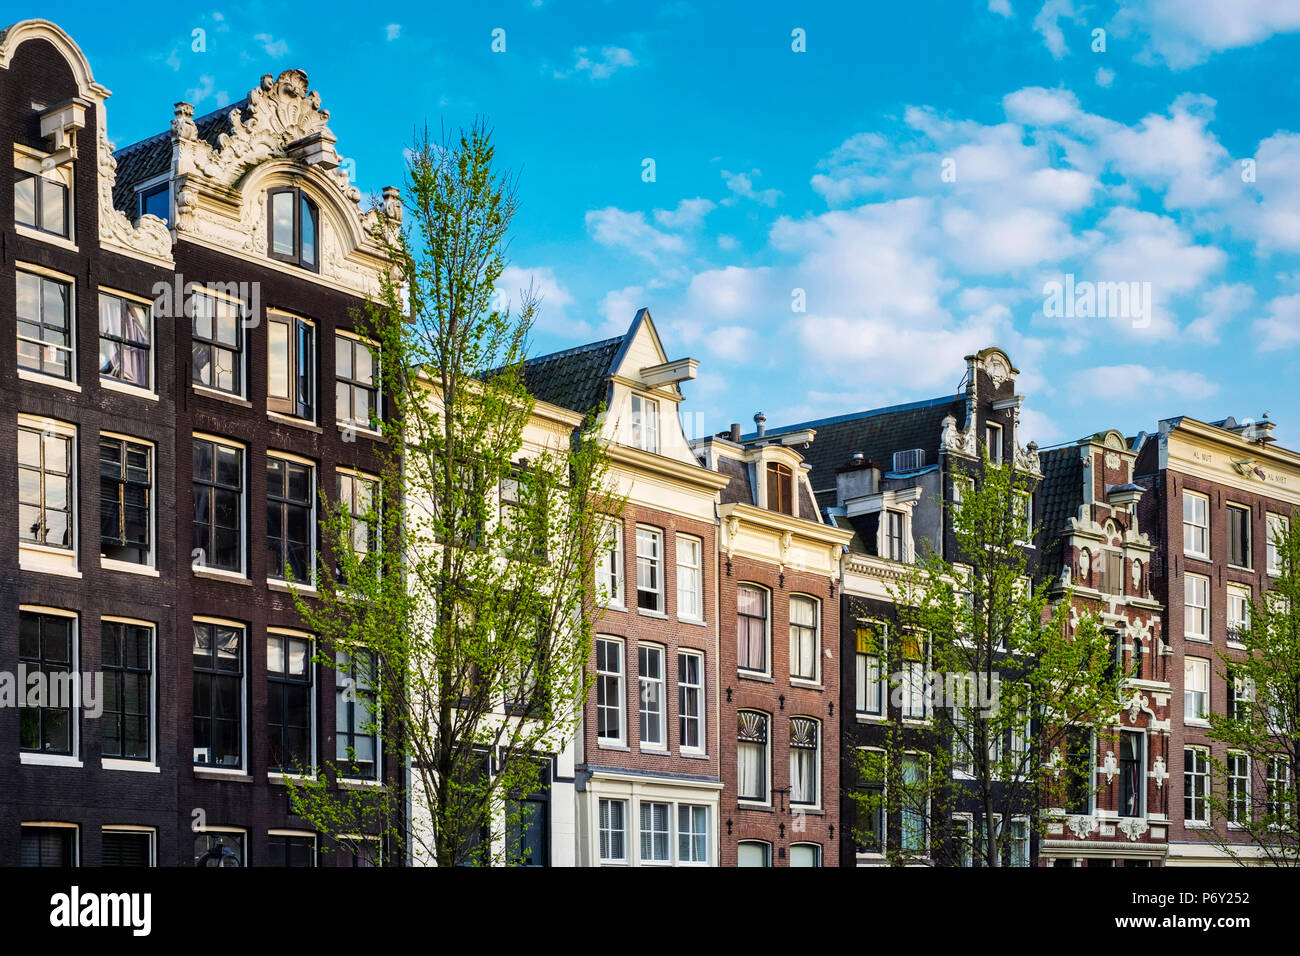 Niederlande, Amsterdam. Die Fassaden der Häuser auf den Kanal Oudezijds Voorburgwal Kanal. Stockfoto